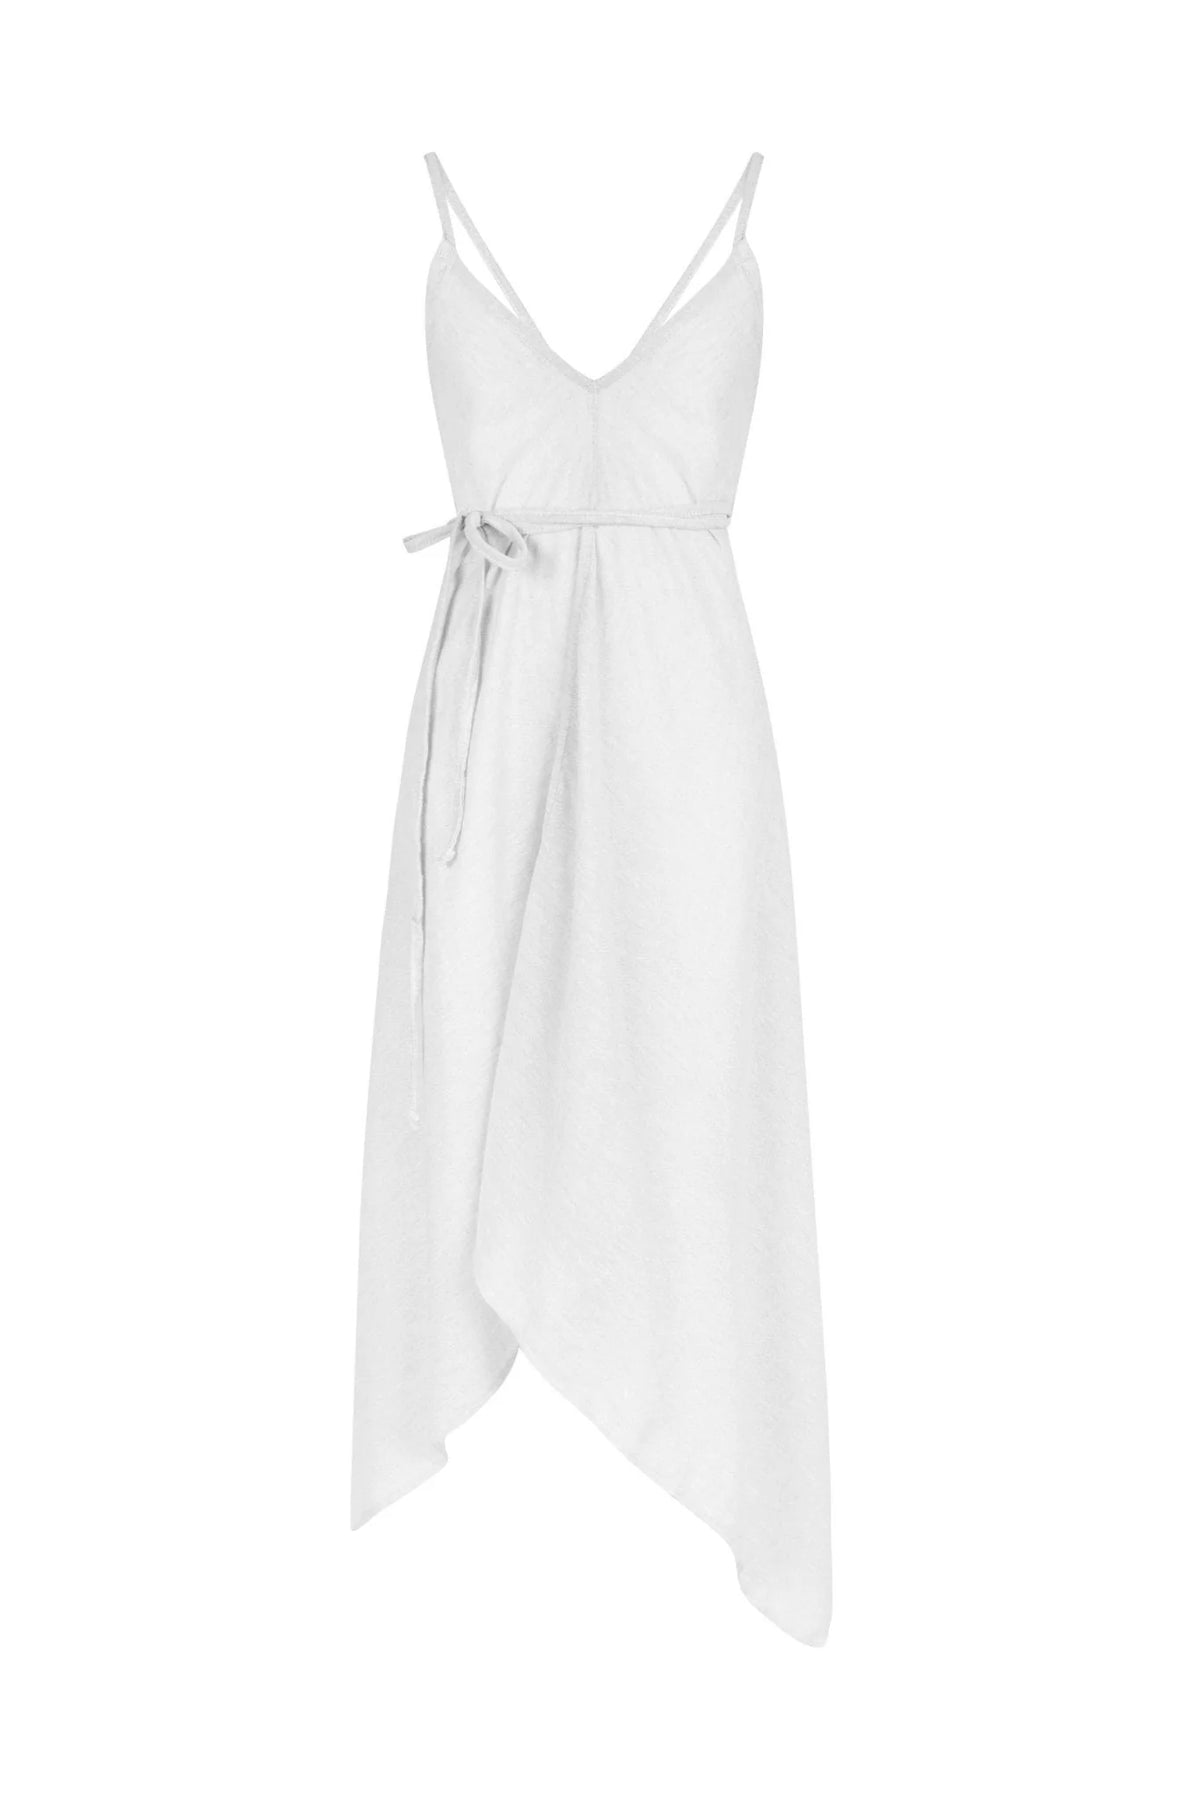 The Handloom Sage Tie Dress - White